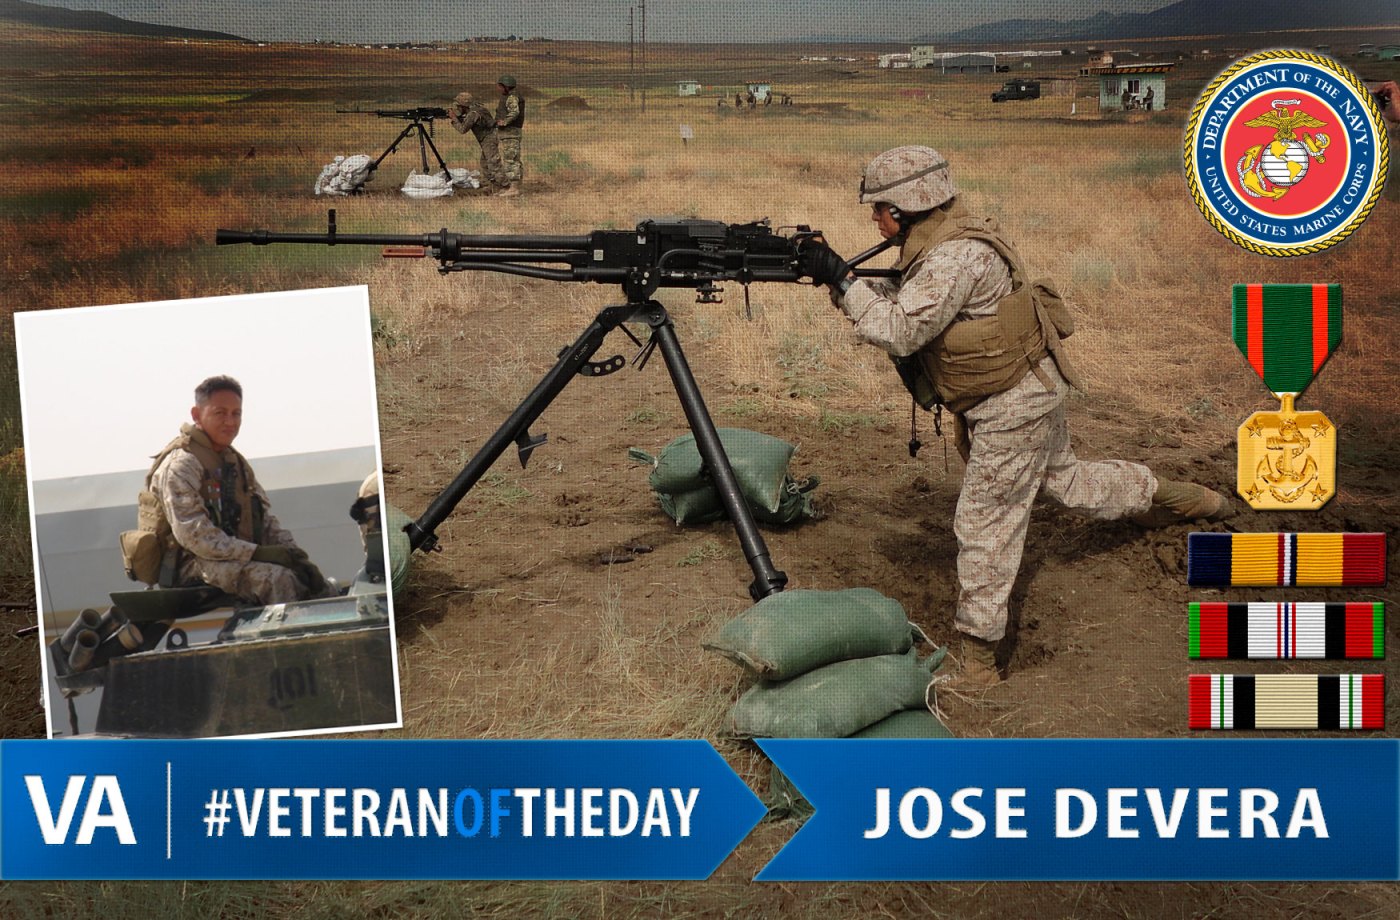 Jose Devera - Veteran of the Day